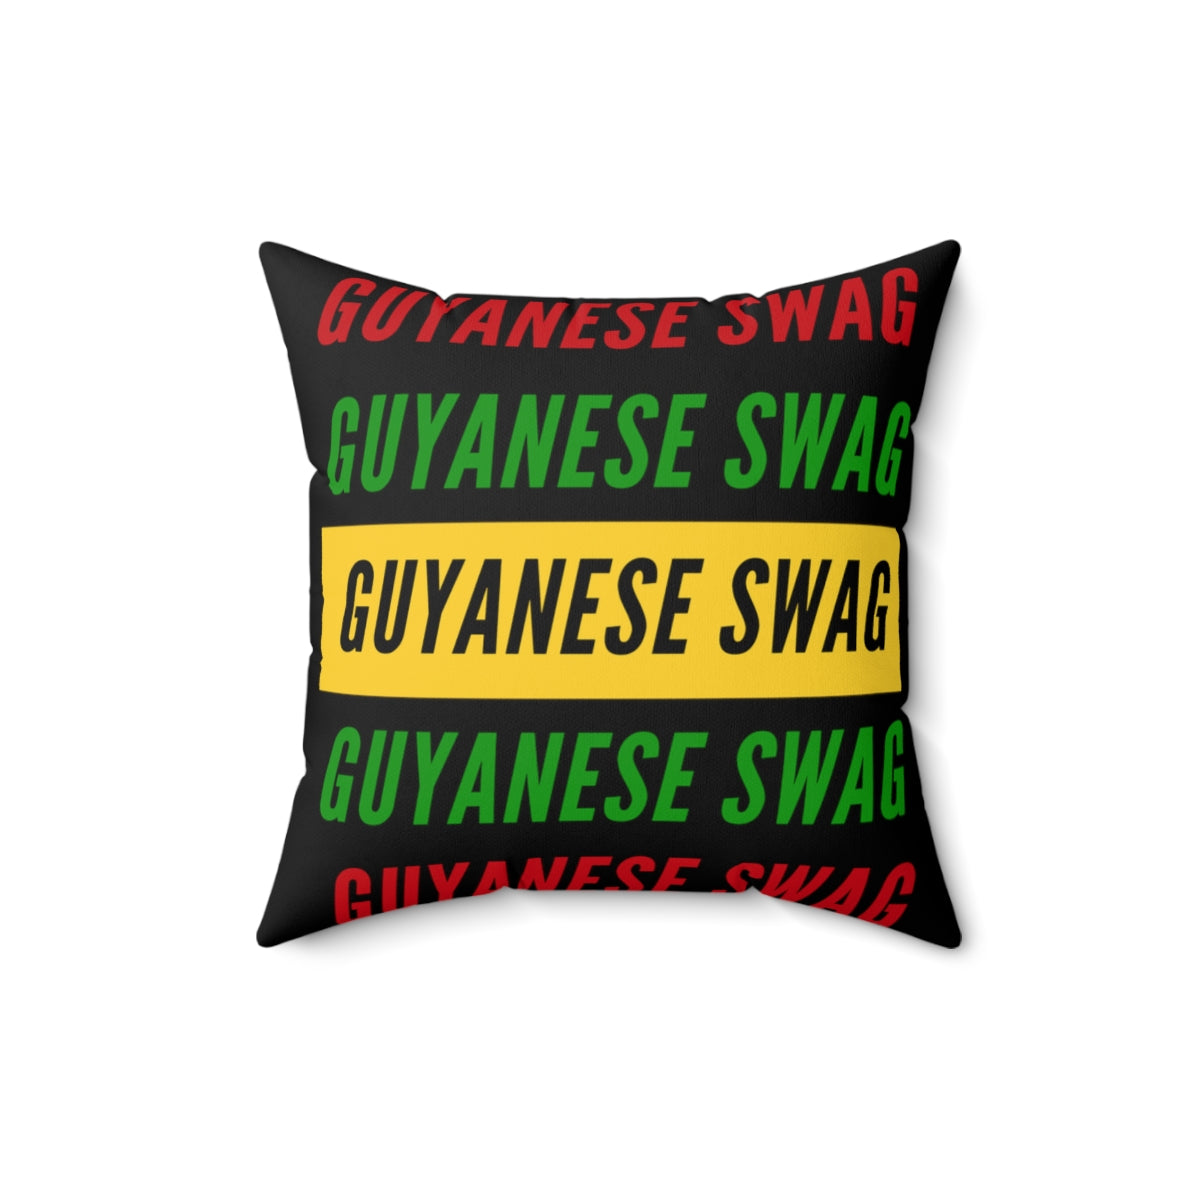 Guyanese Swag Spun Polyester Square Pillow